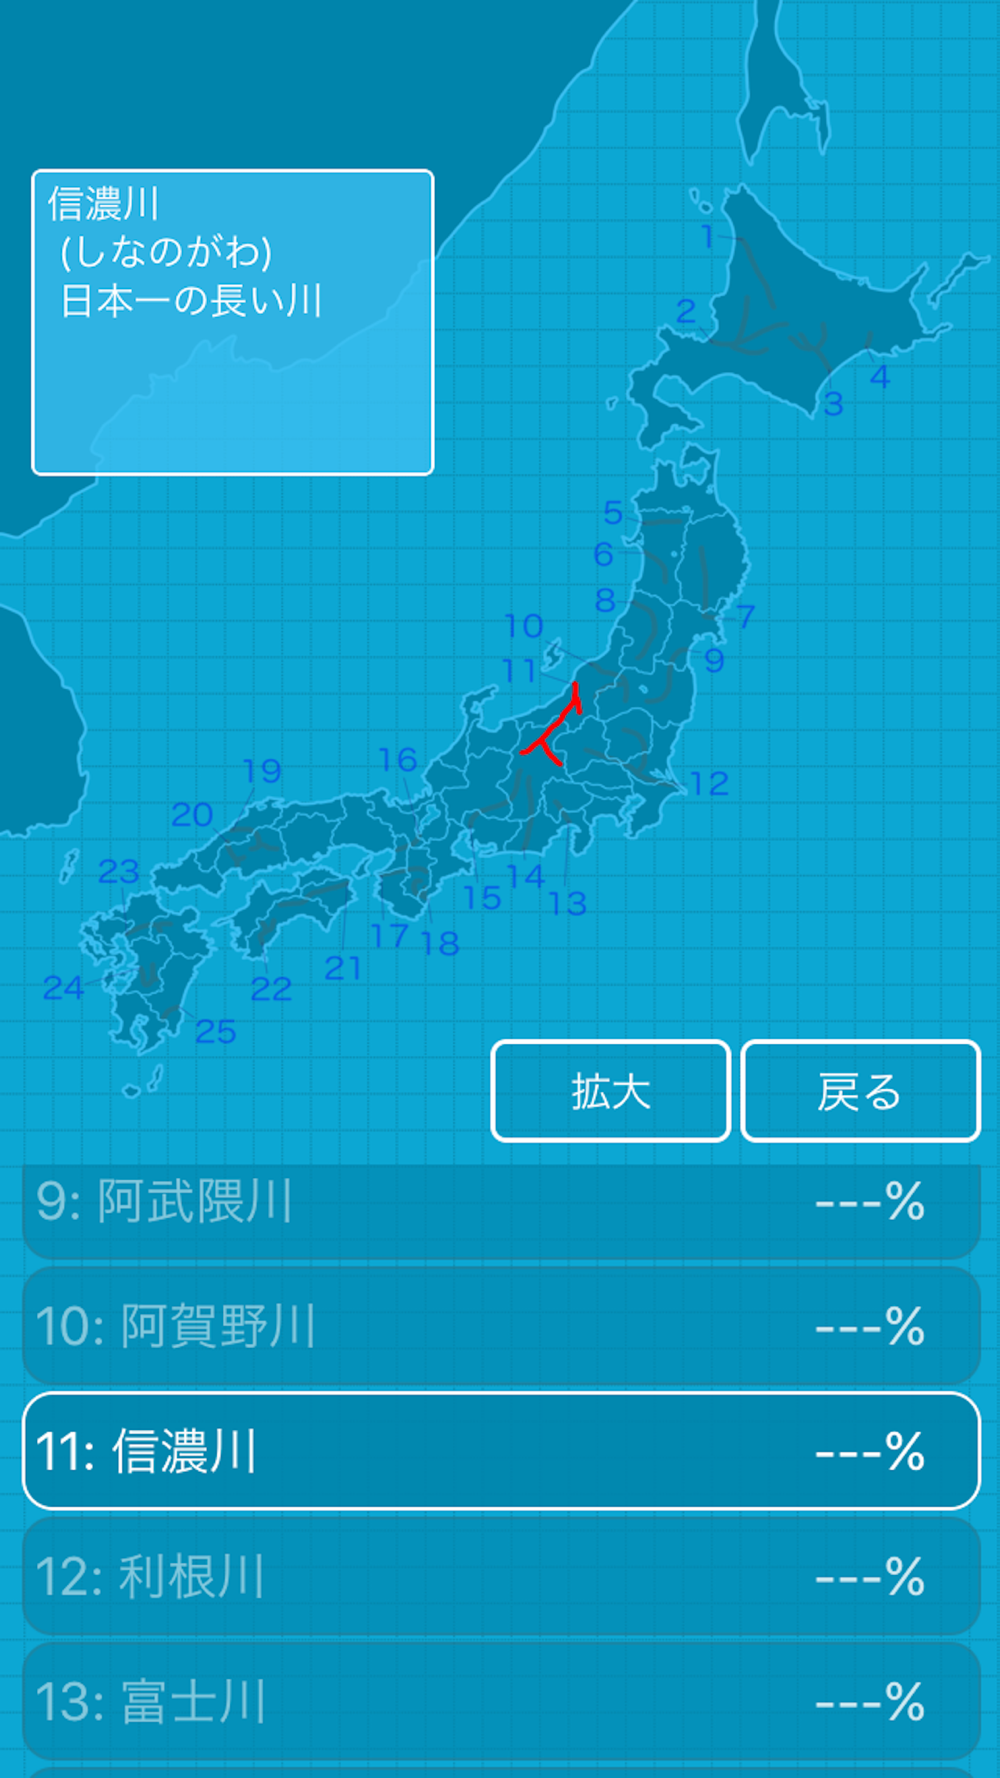 日本の山や川を覚える都道府県の地理クイズ Free Download App For Iphone Steprimo Com